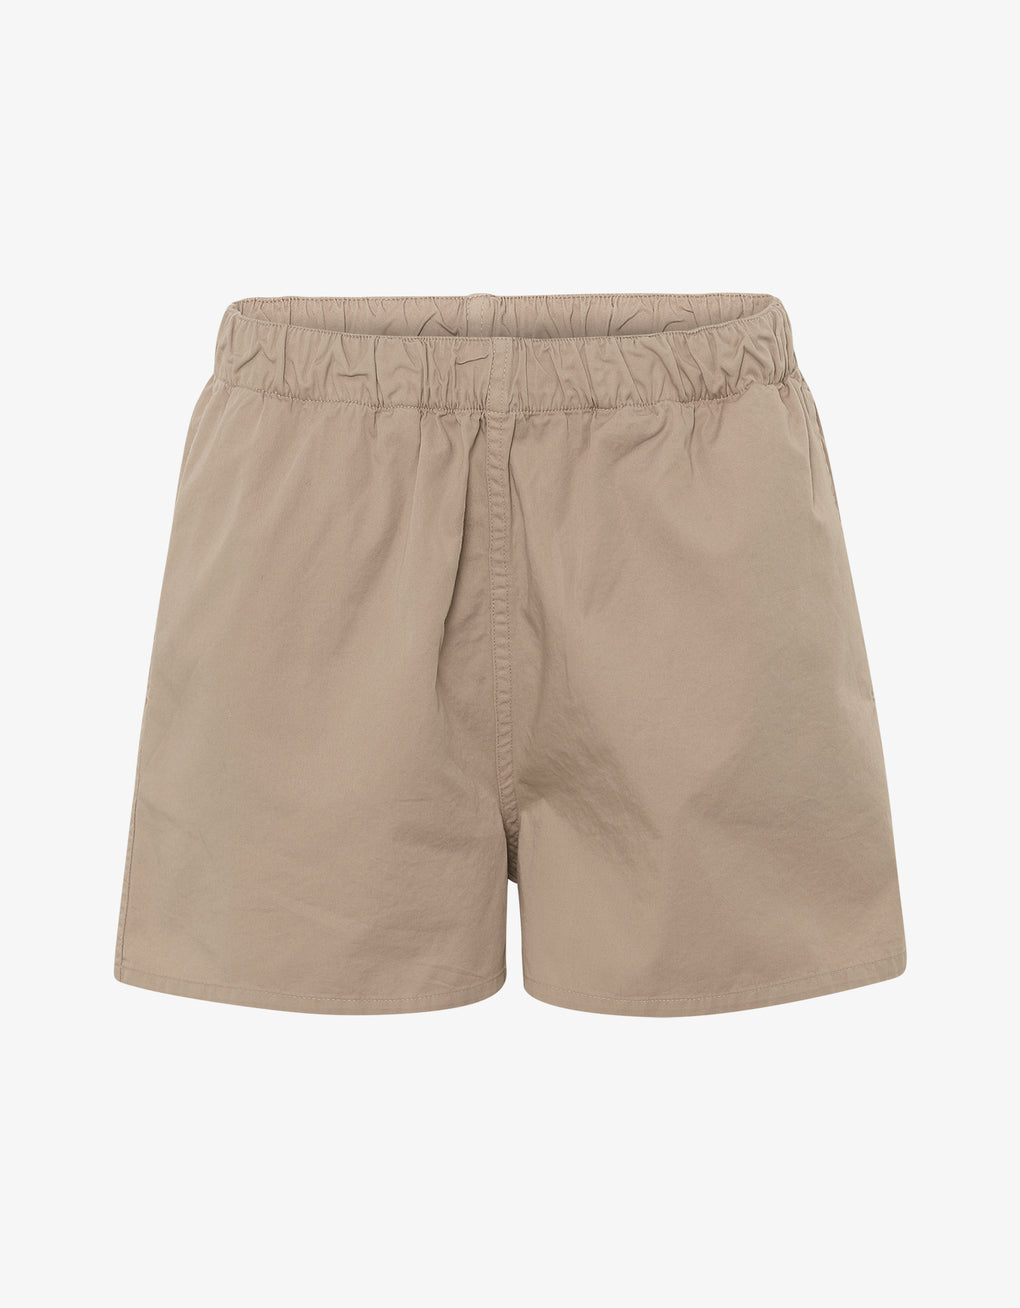 Organic twill shorts - desert khaki